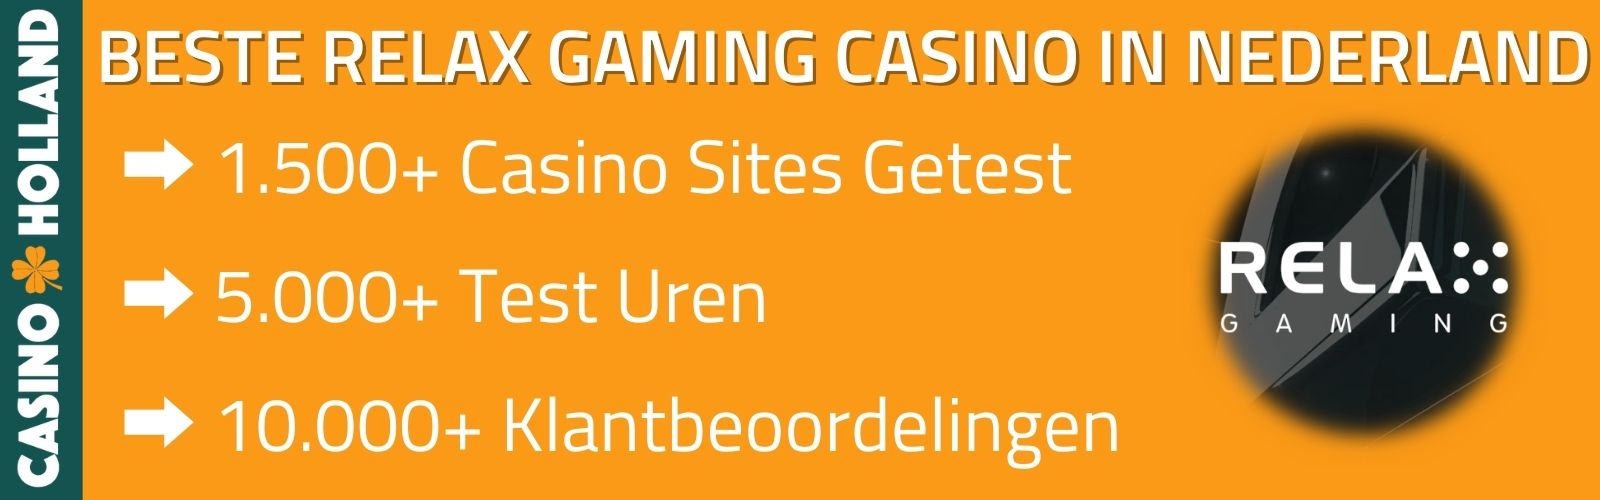 relax gaming casino